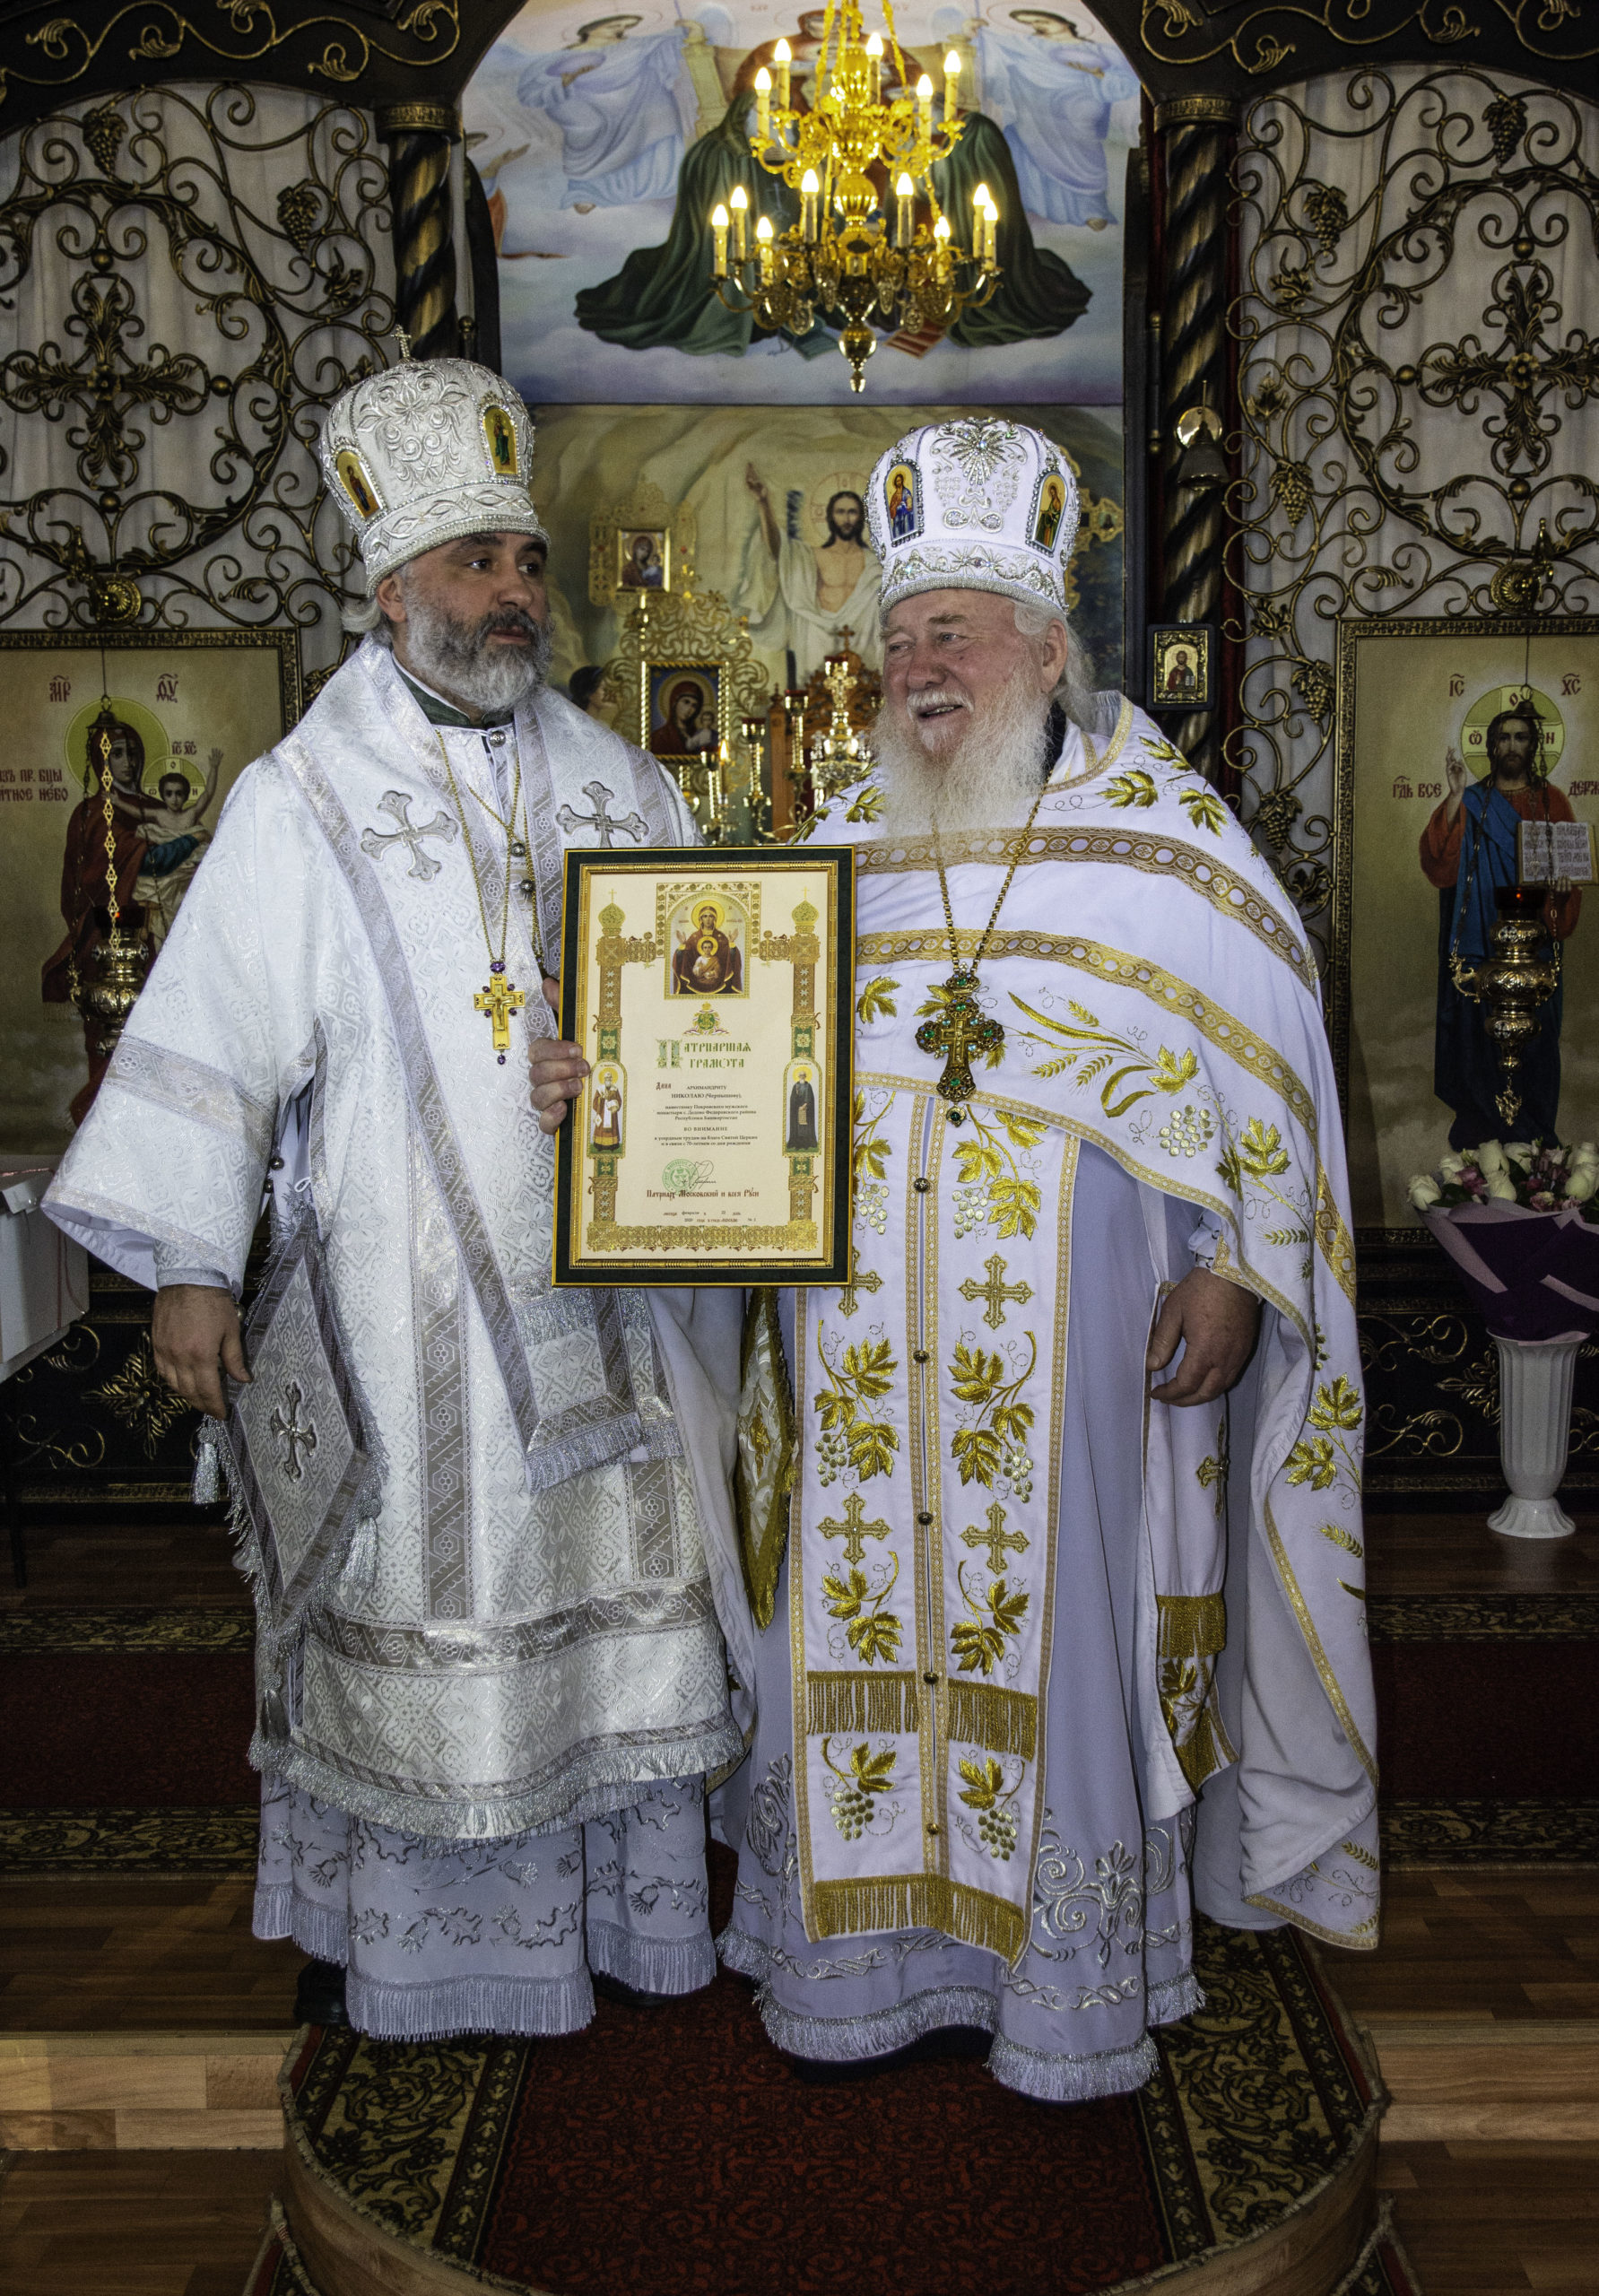 22 февраля 2020 г наместнику Покровского монастыря, архимандриту Николаю (Чернышеву) исполнилось 70 лет.